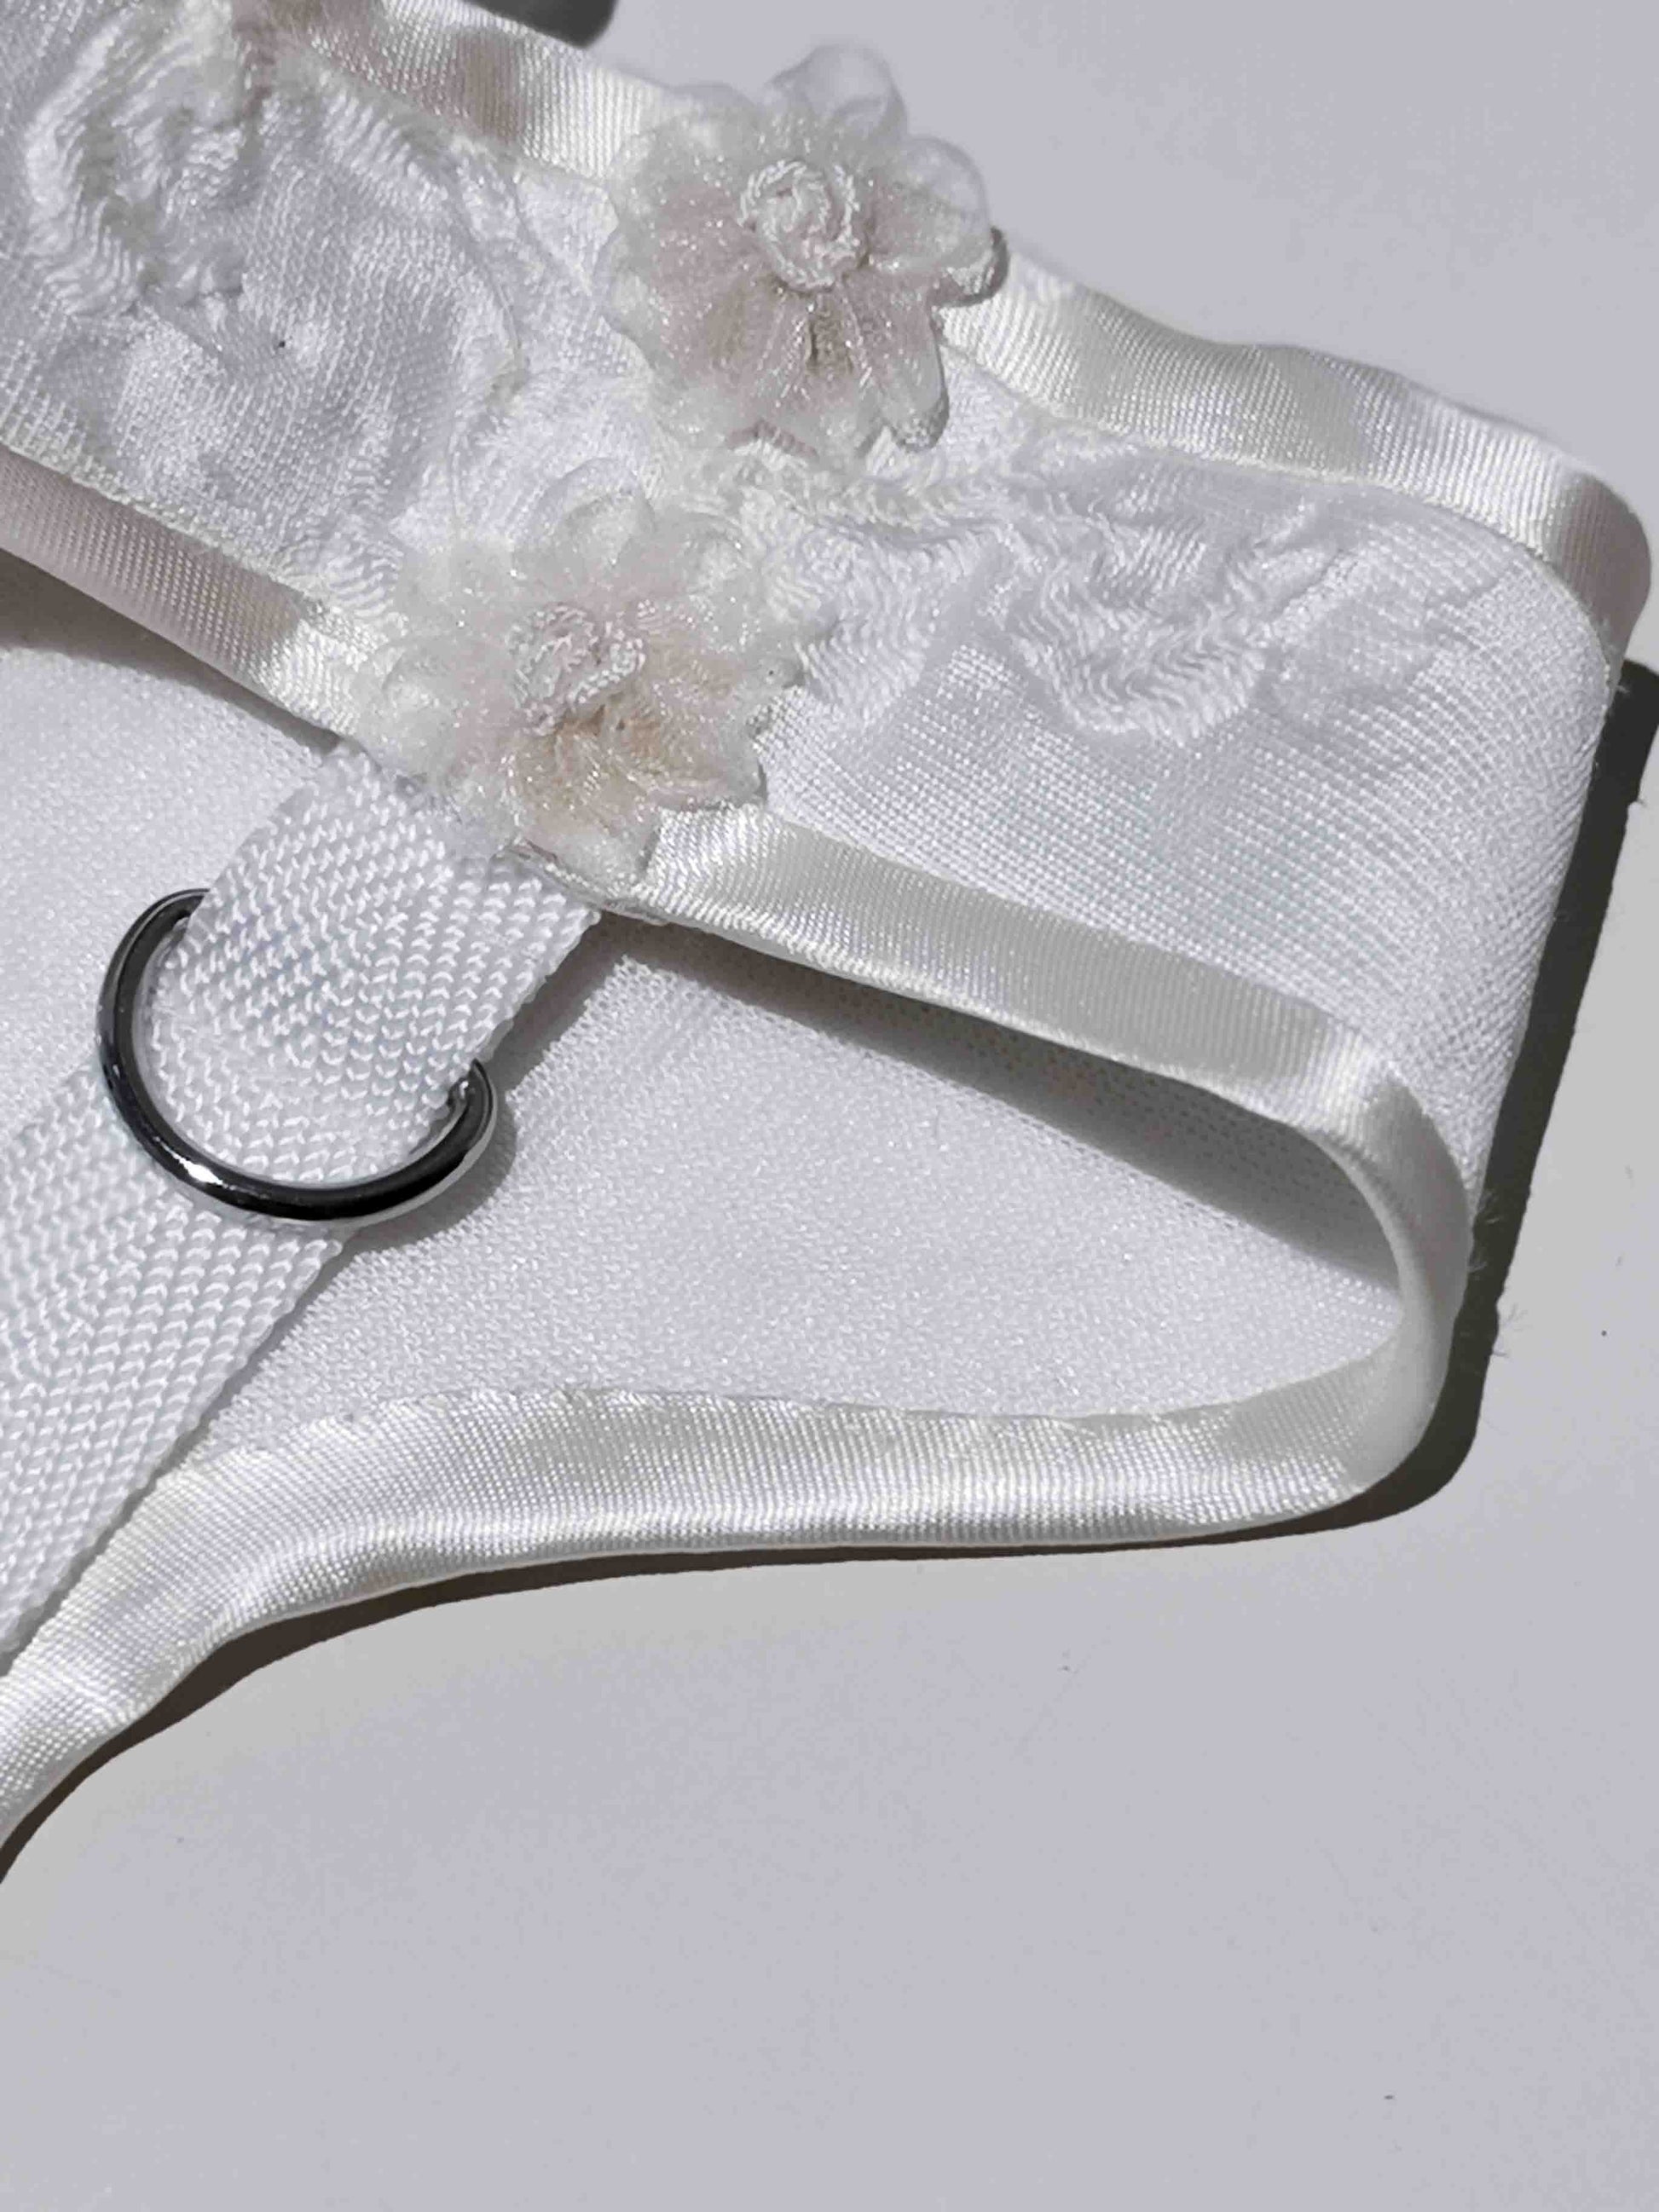 Tessuto jacquard in rilievo bianco, regolabile con cinturino, anello a D per guinzaglio